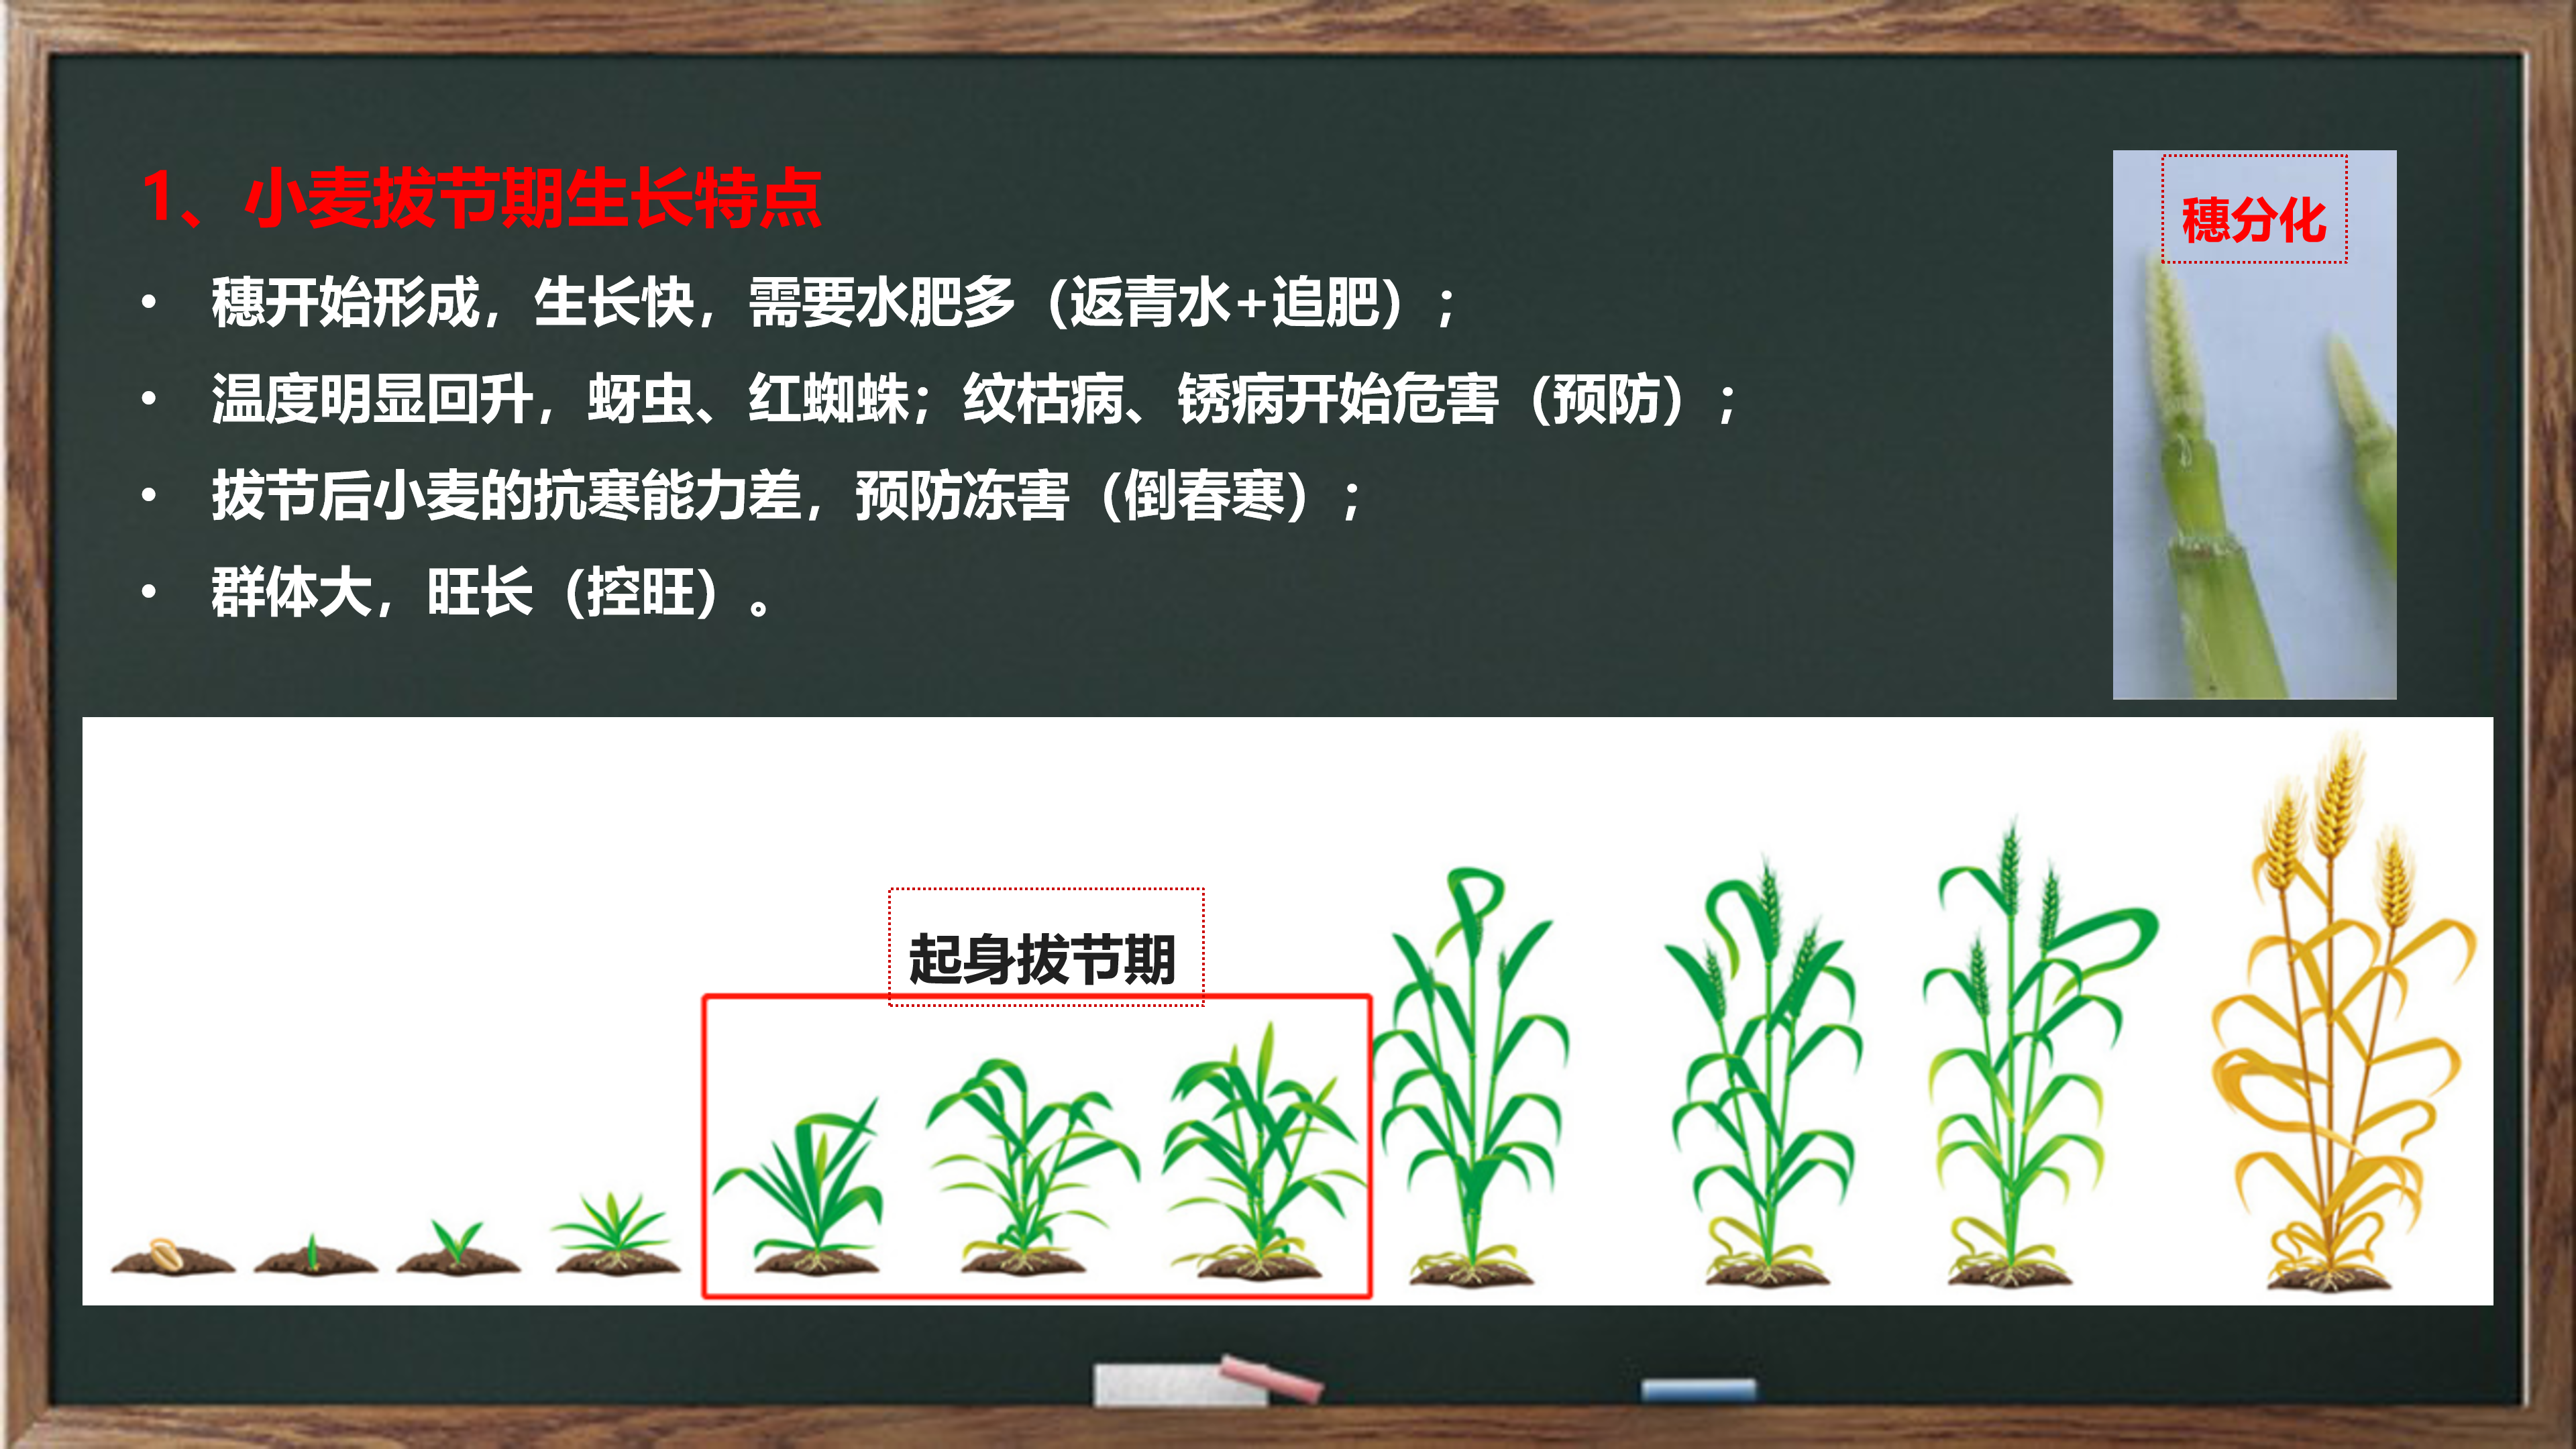 小麦生长周期（一张图带你看懂小麦的生育期）